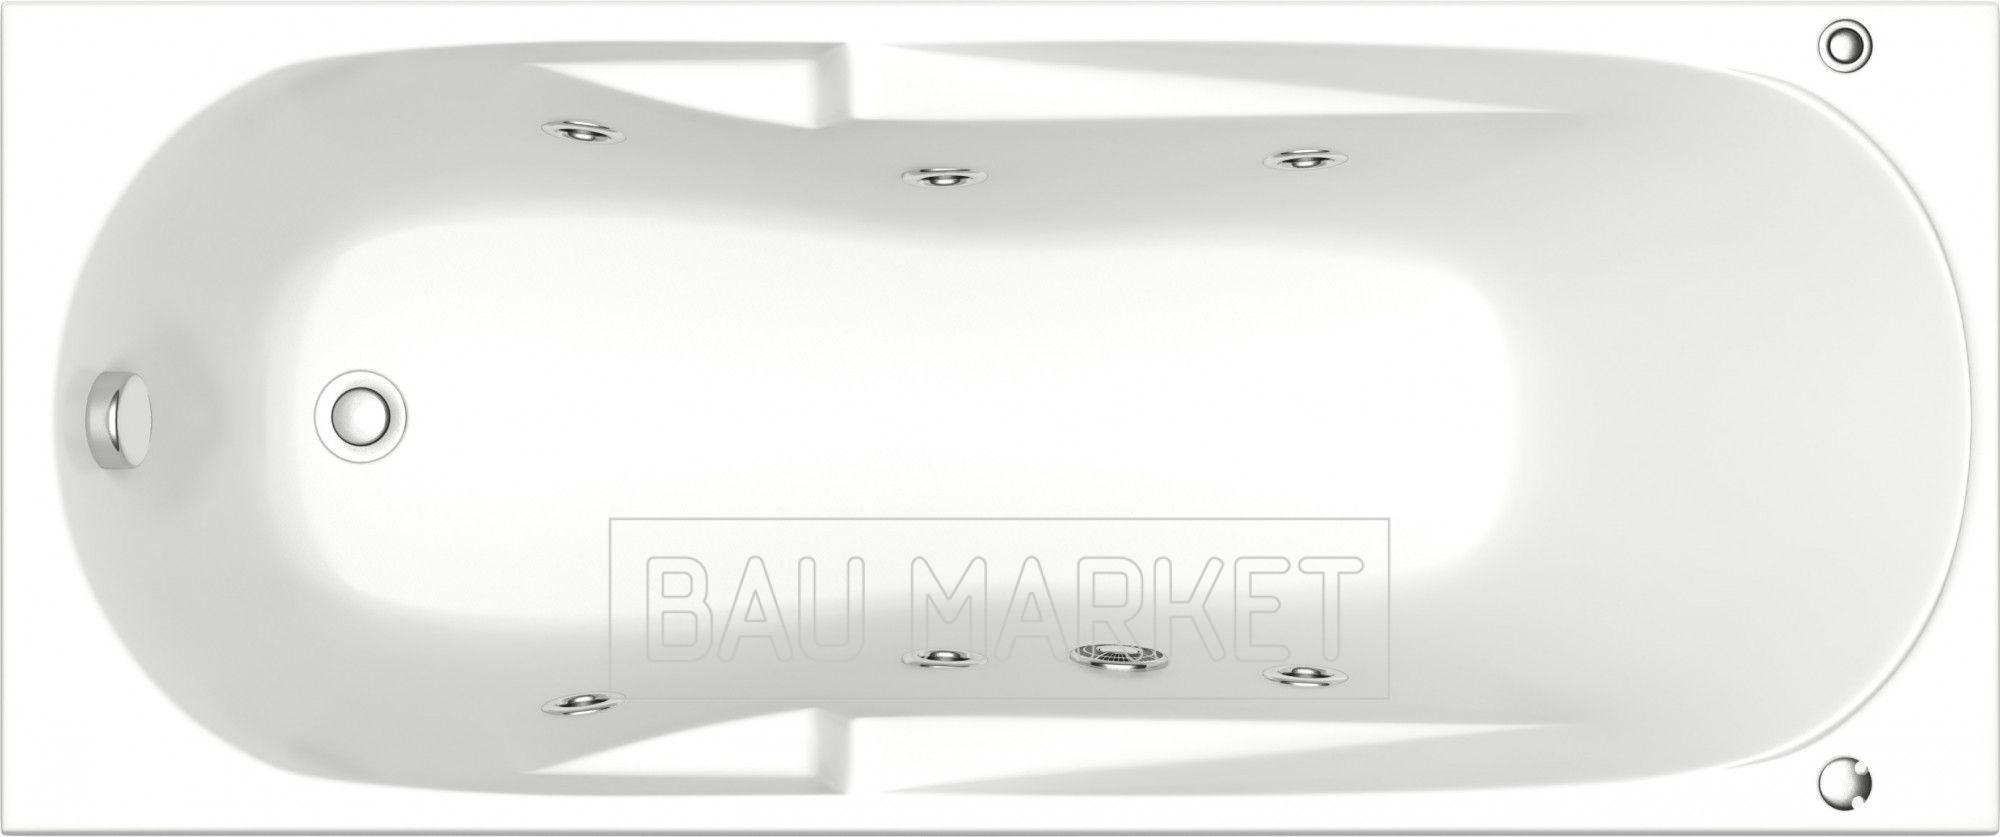 Ванна гидромассажная BAS Ибица 150х70 см с Г/М оборудованием серия FLAT 